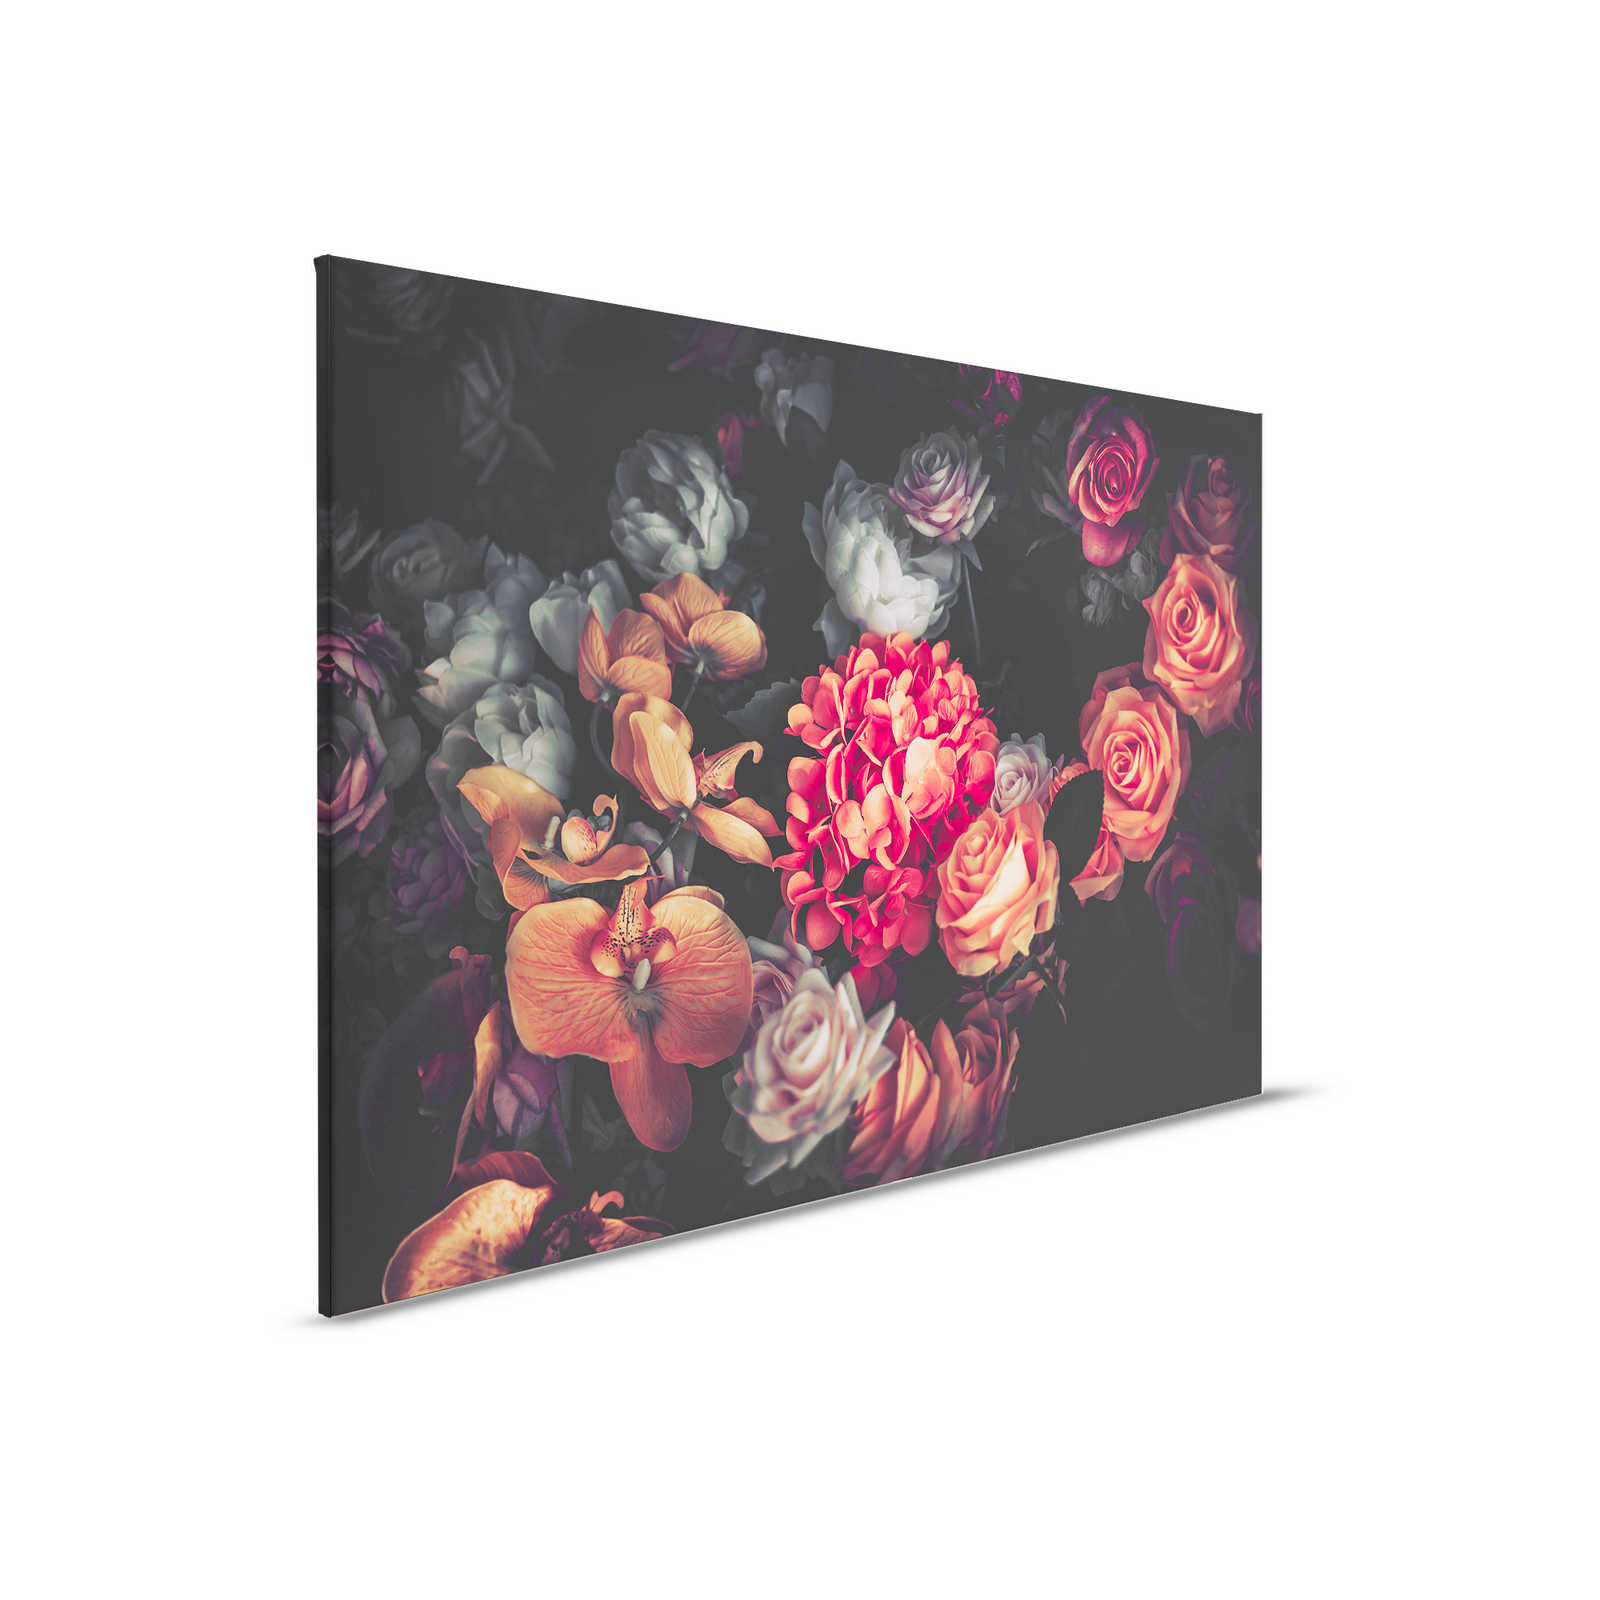         Rosen Blumenstrauß Leinwand – 0,90 m x 0,60 m
    